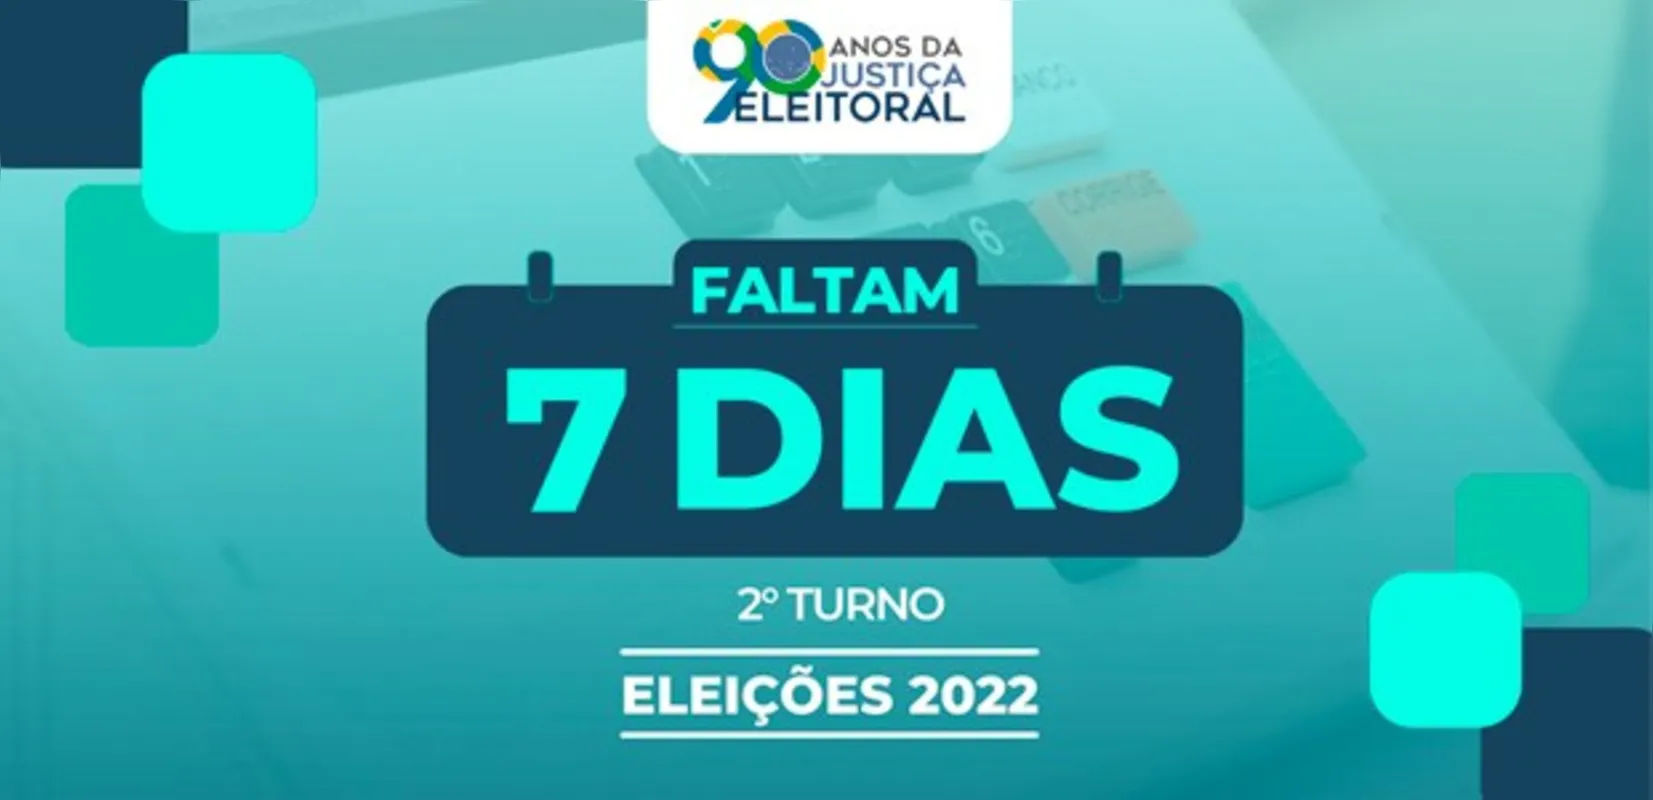 Doze estados votam para governador e oito cidades para prefeito. No Paraná a escolha será apenas do Presidente da República.